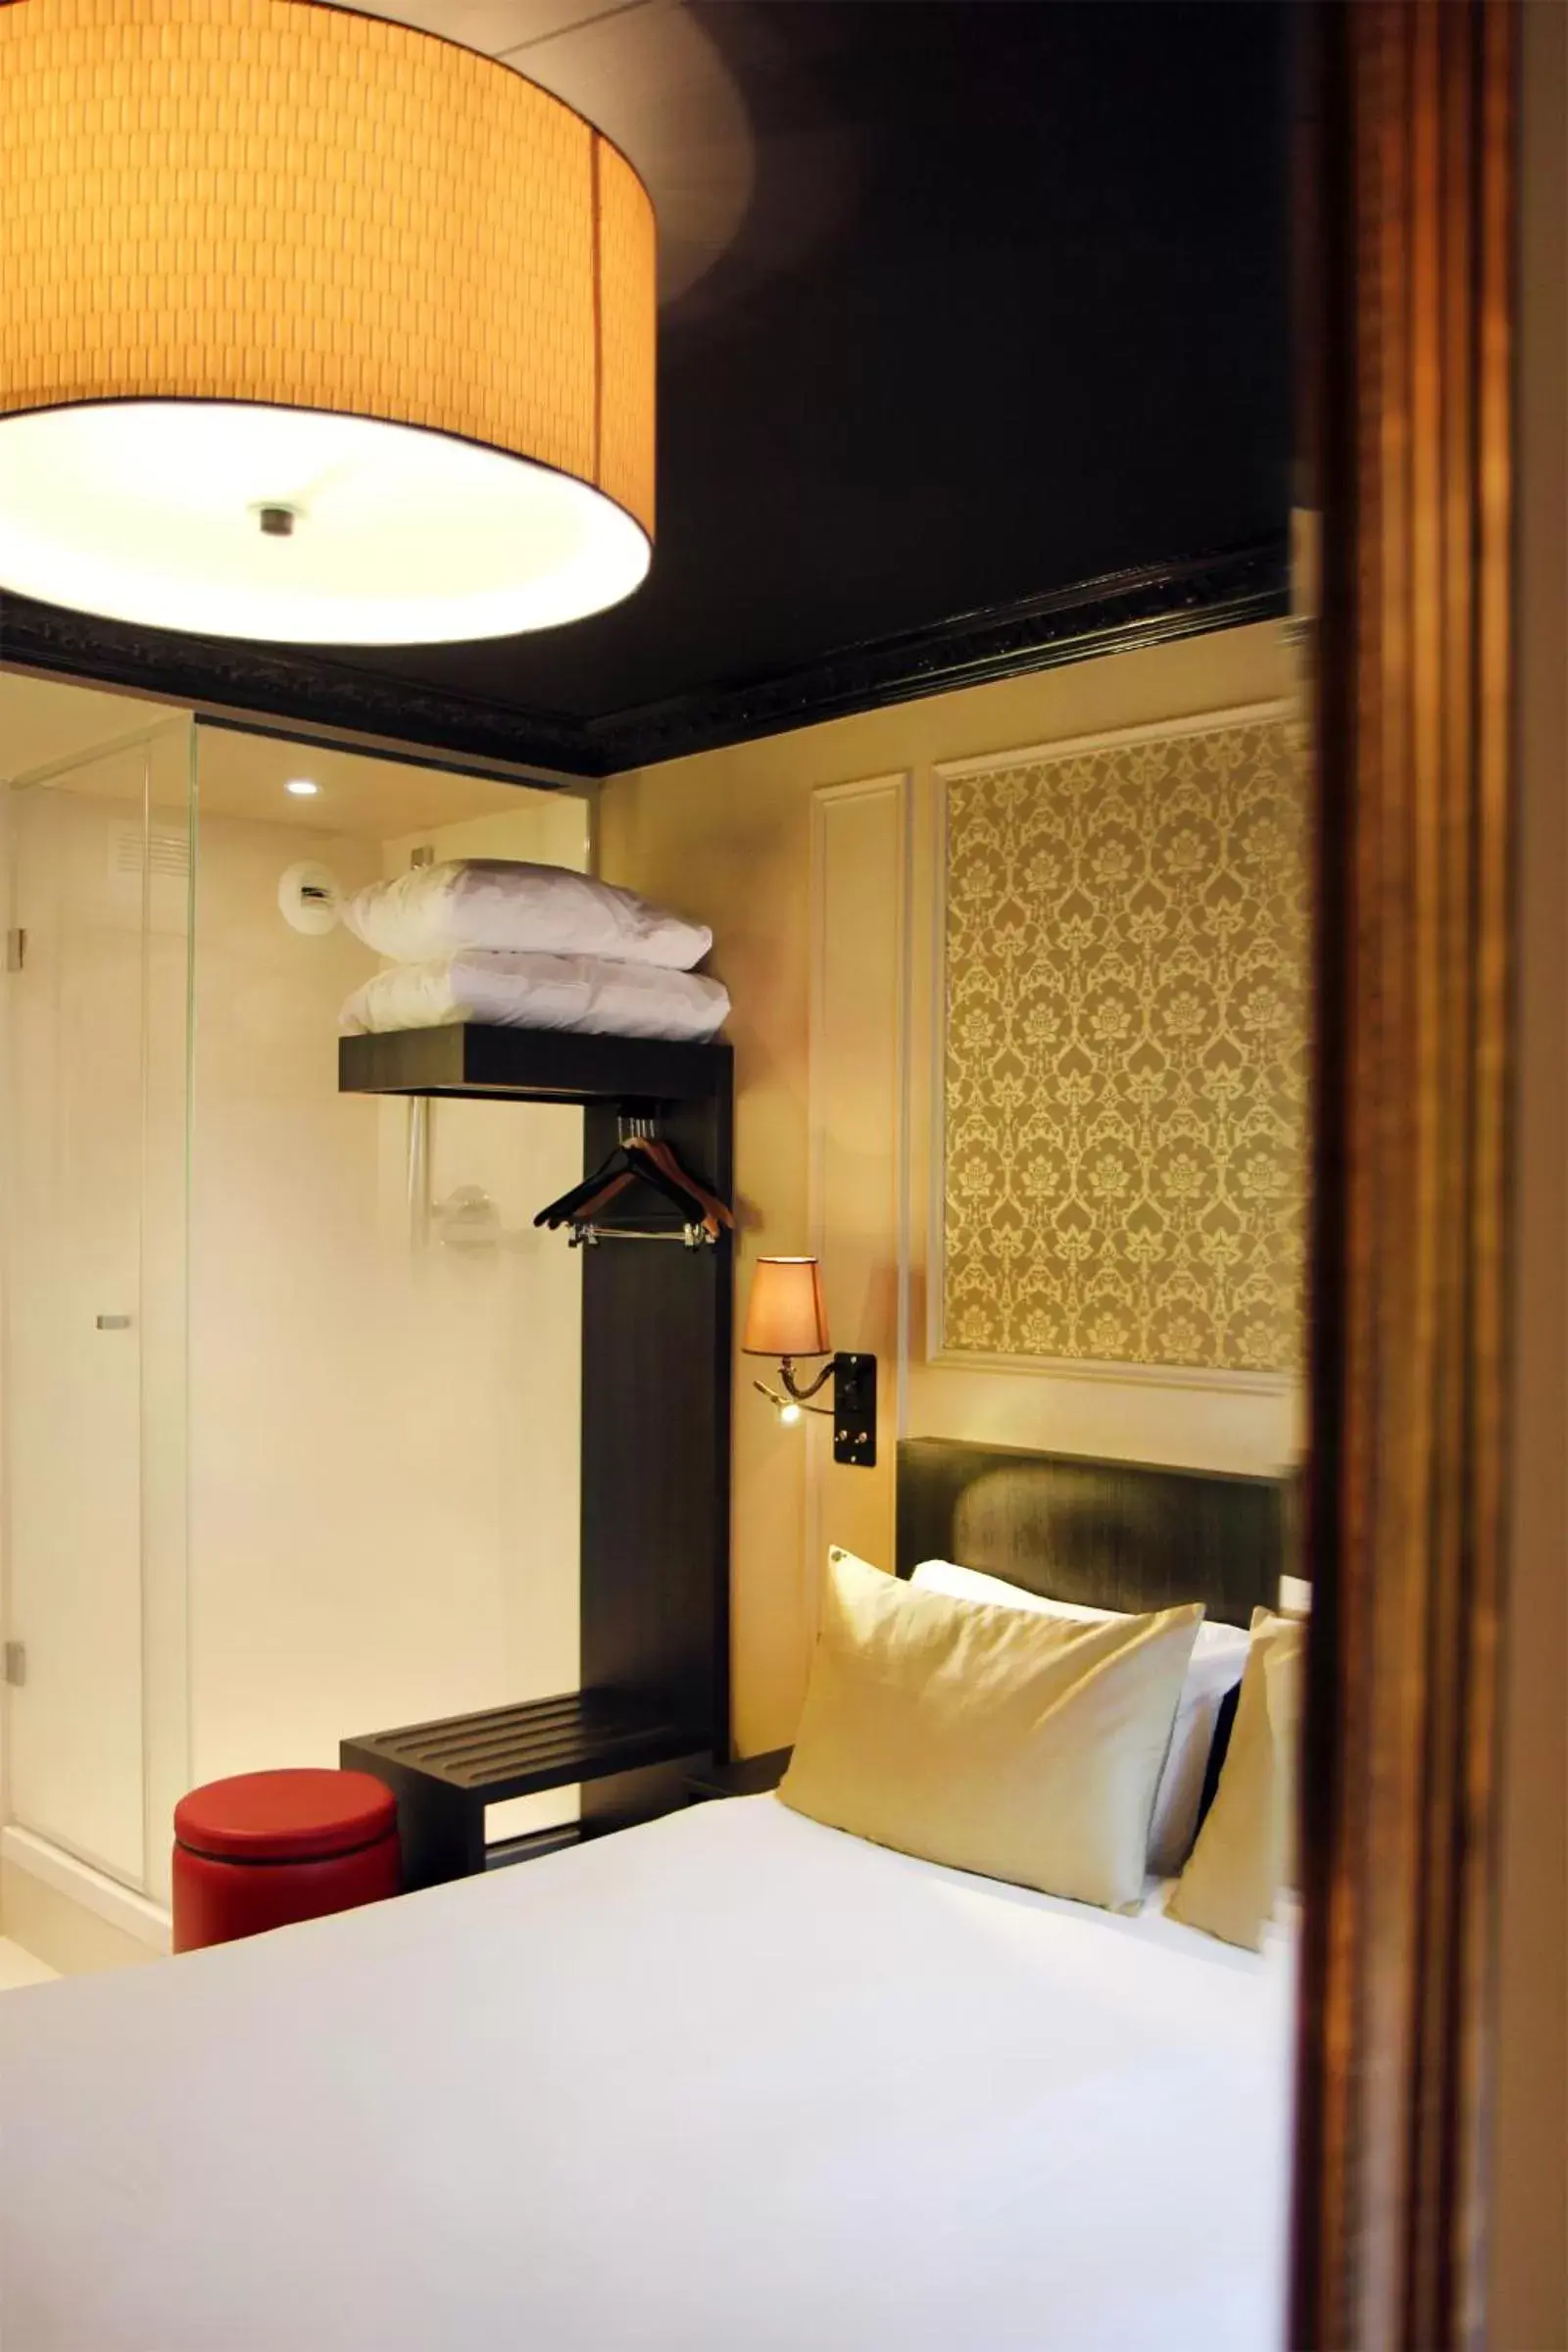 Shower, Bed in Best Western Le Montmartre – Saint Pierre